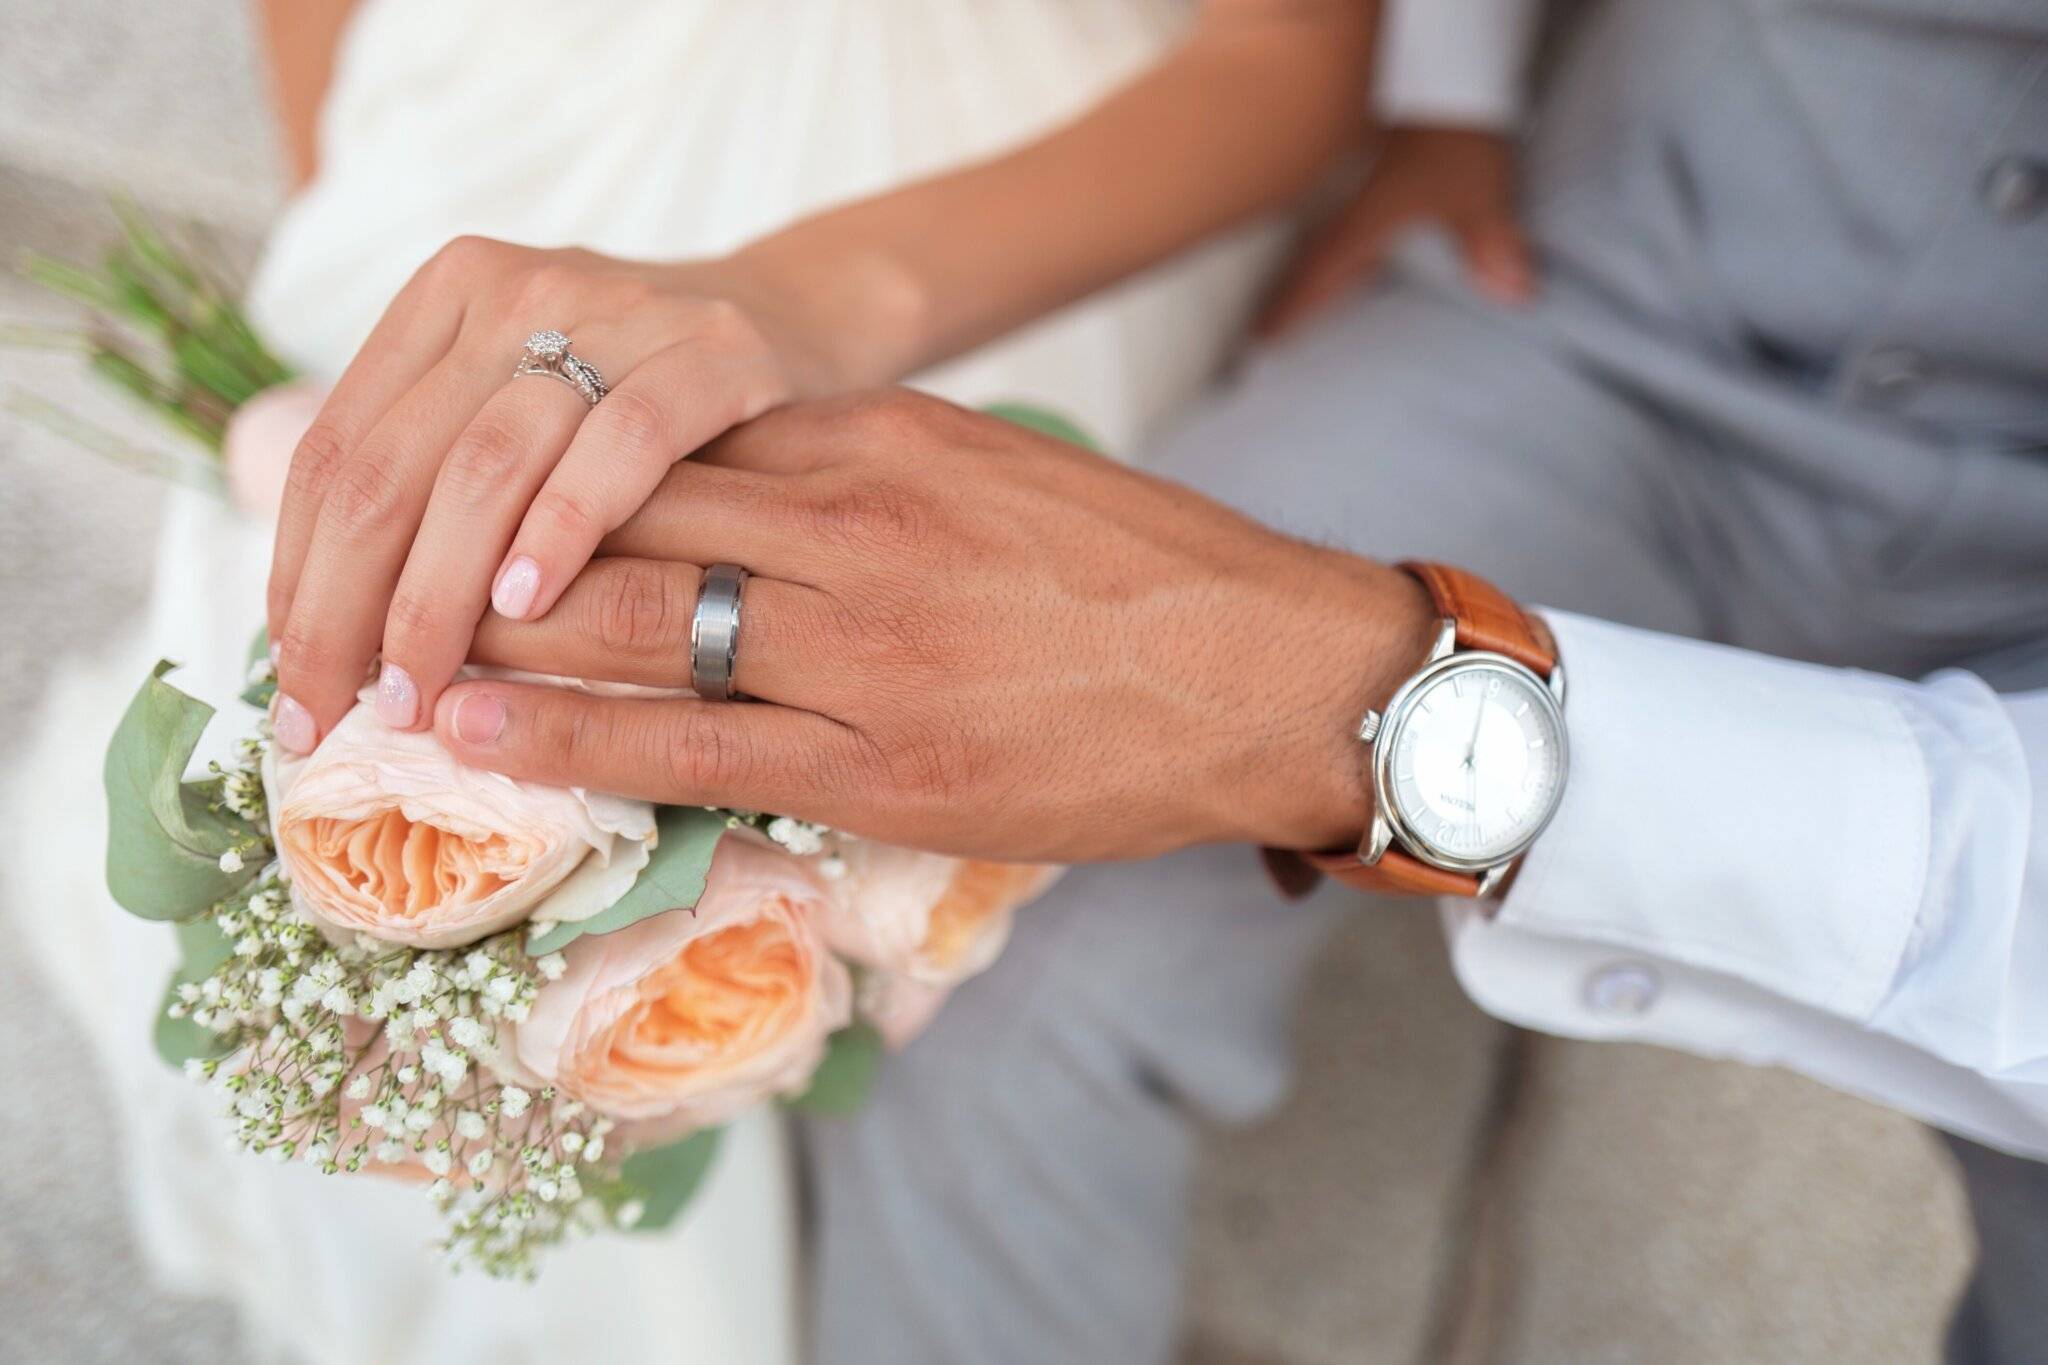 Evlenme Ehliyet Belgesi Nedir? Nasıl Alınır?